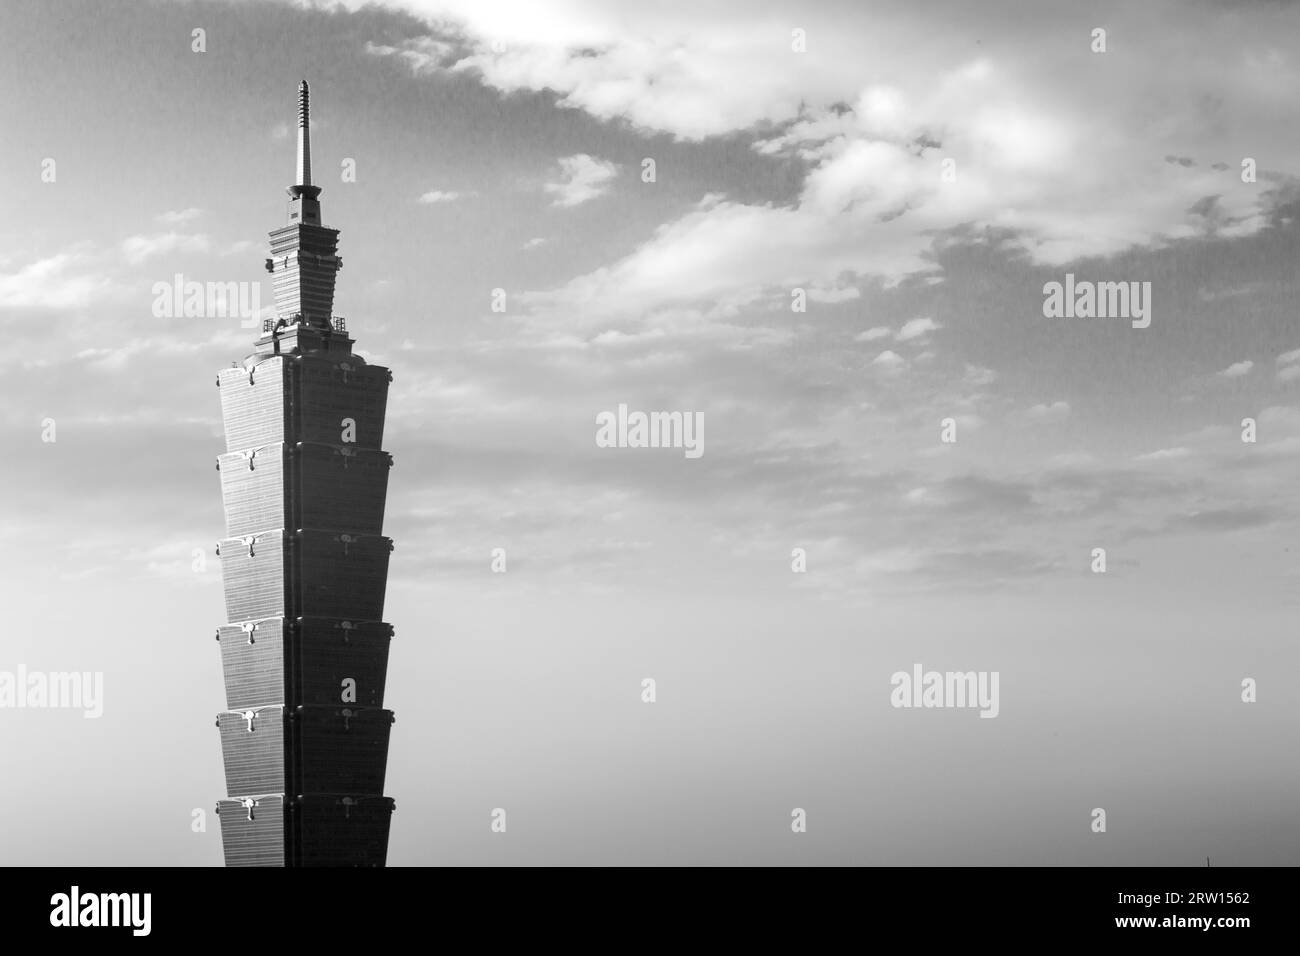 Taipei, Taiwan, January 5, 2015: Close up of Taipei 101 tower in black and white Stock Photo